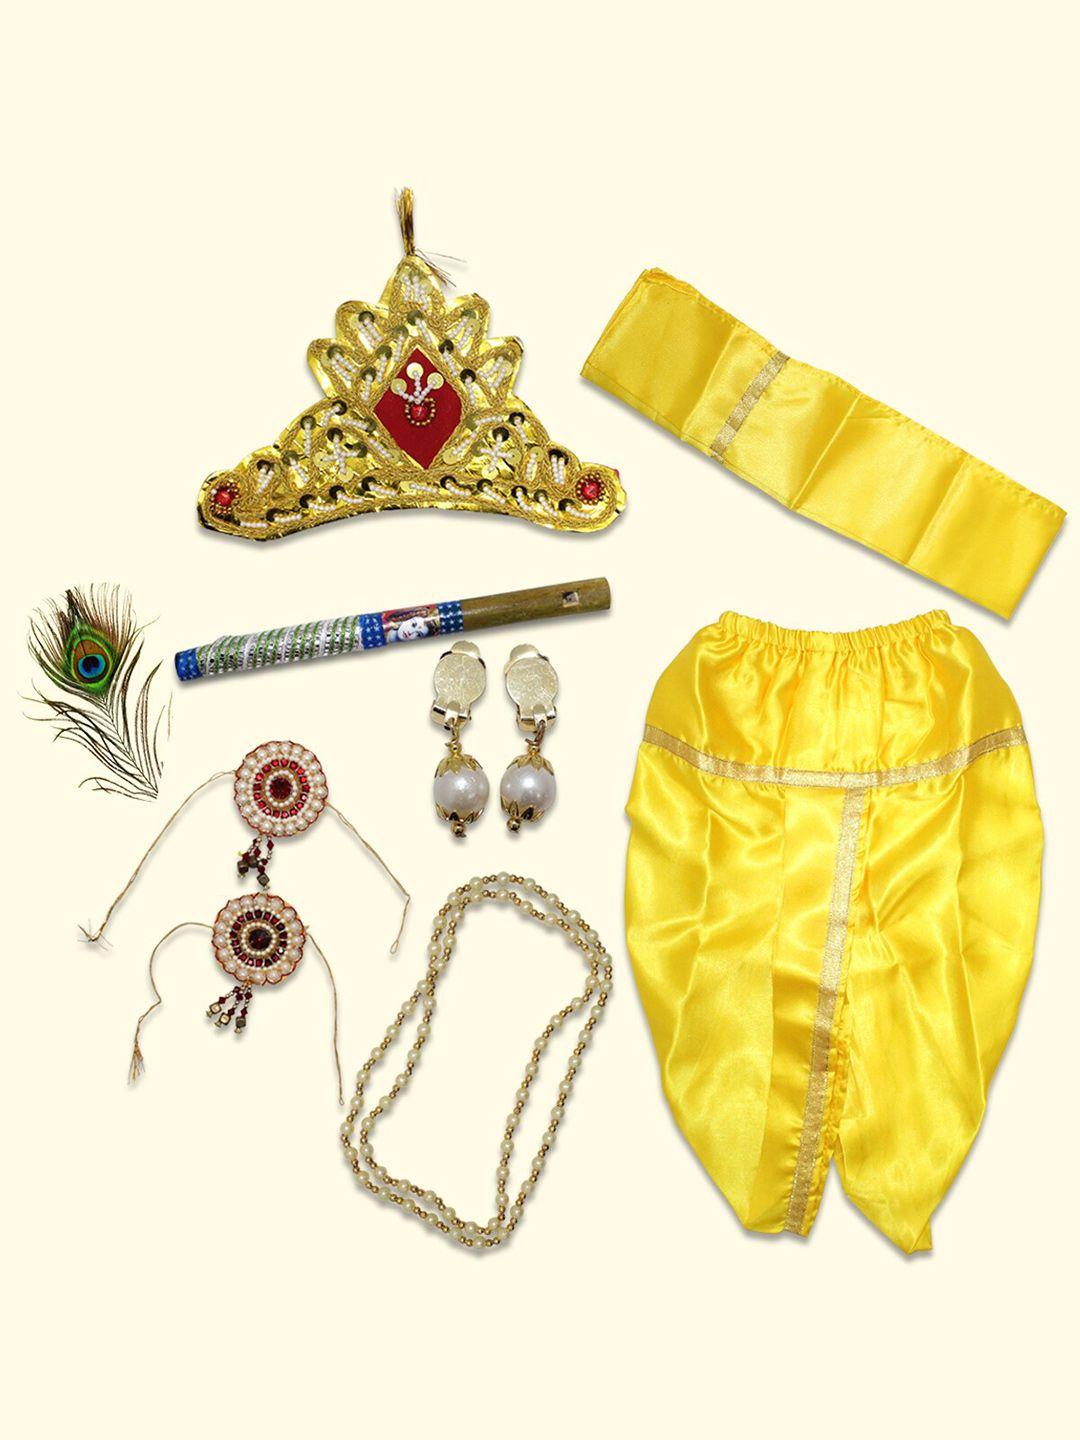 born babies unisex krishna costume ethnic wear cotton clothing set